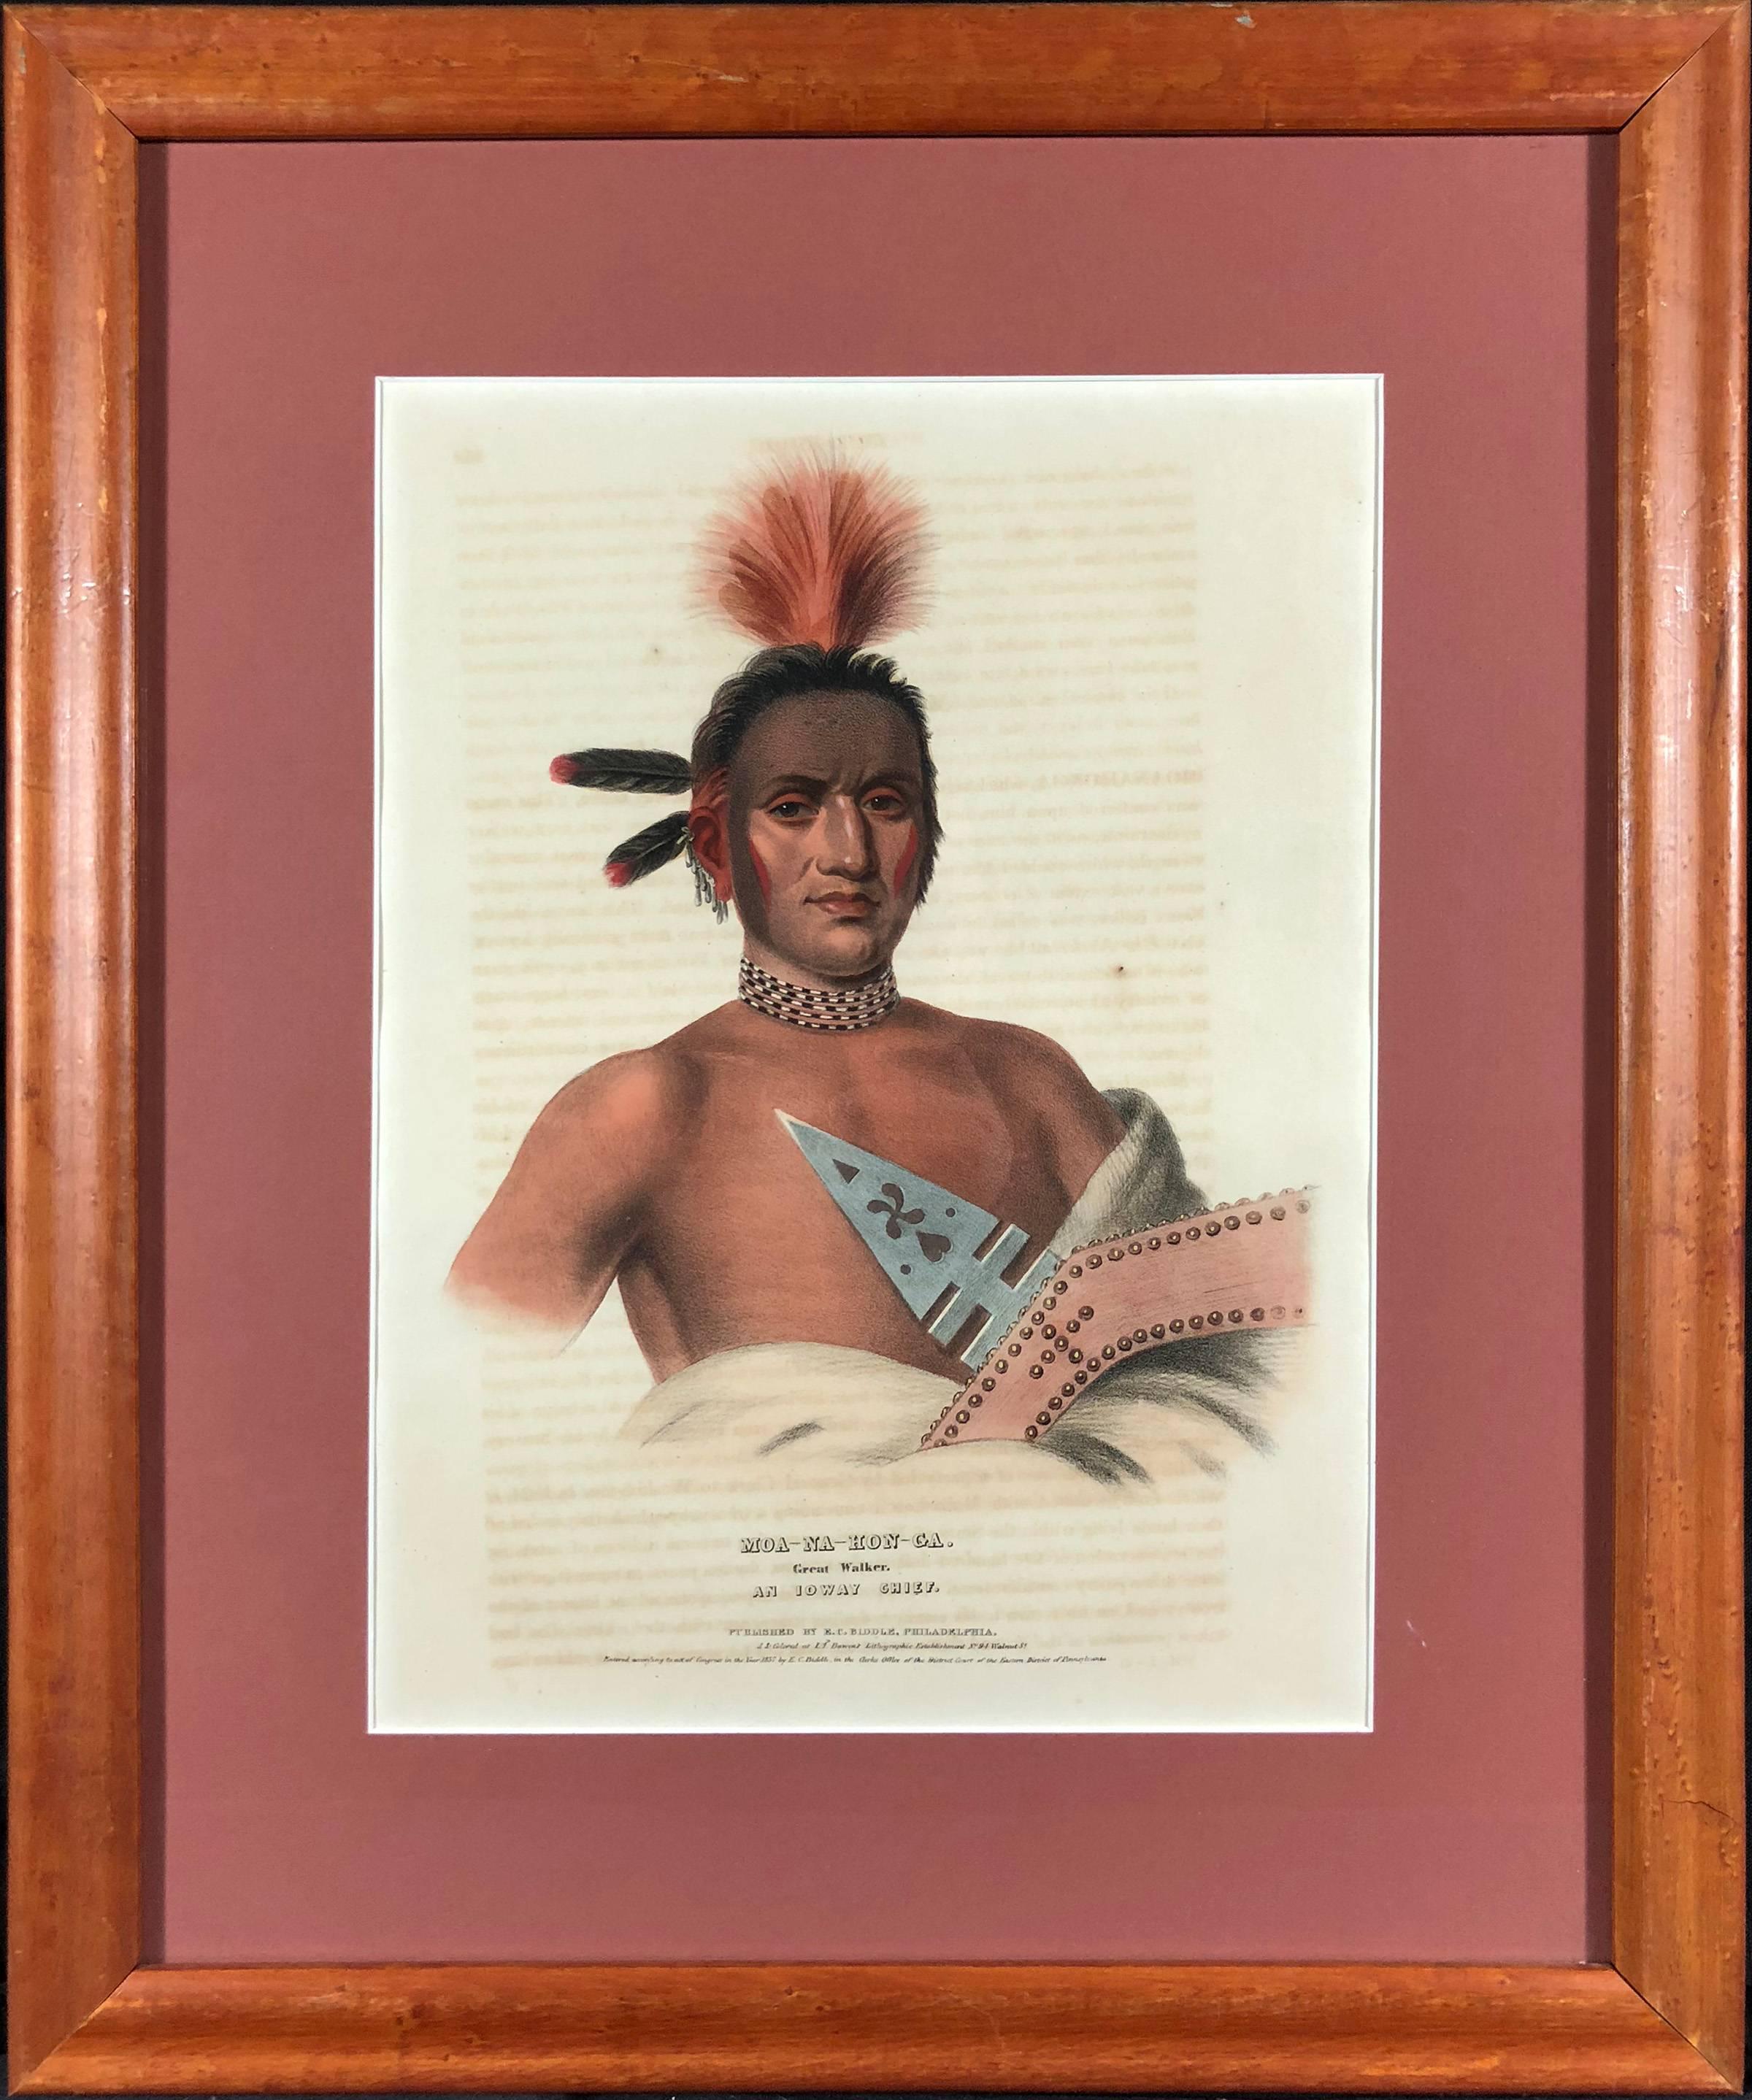 Moa-Na-Hon-Ga, Großer Walker, Ein Chief von Ioway – Print von McKenney & Hall